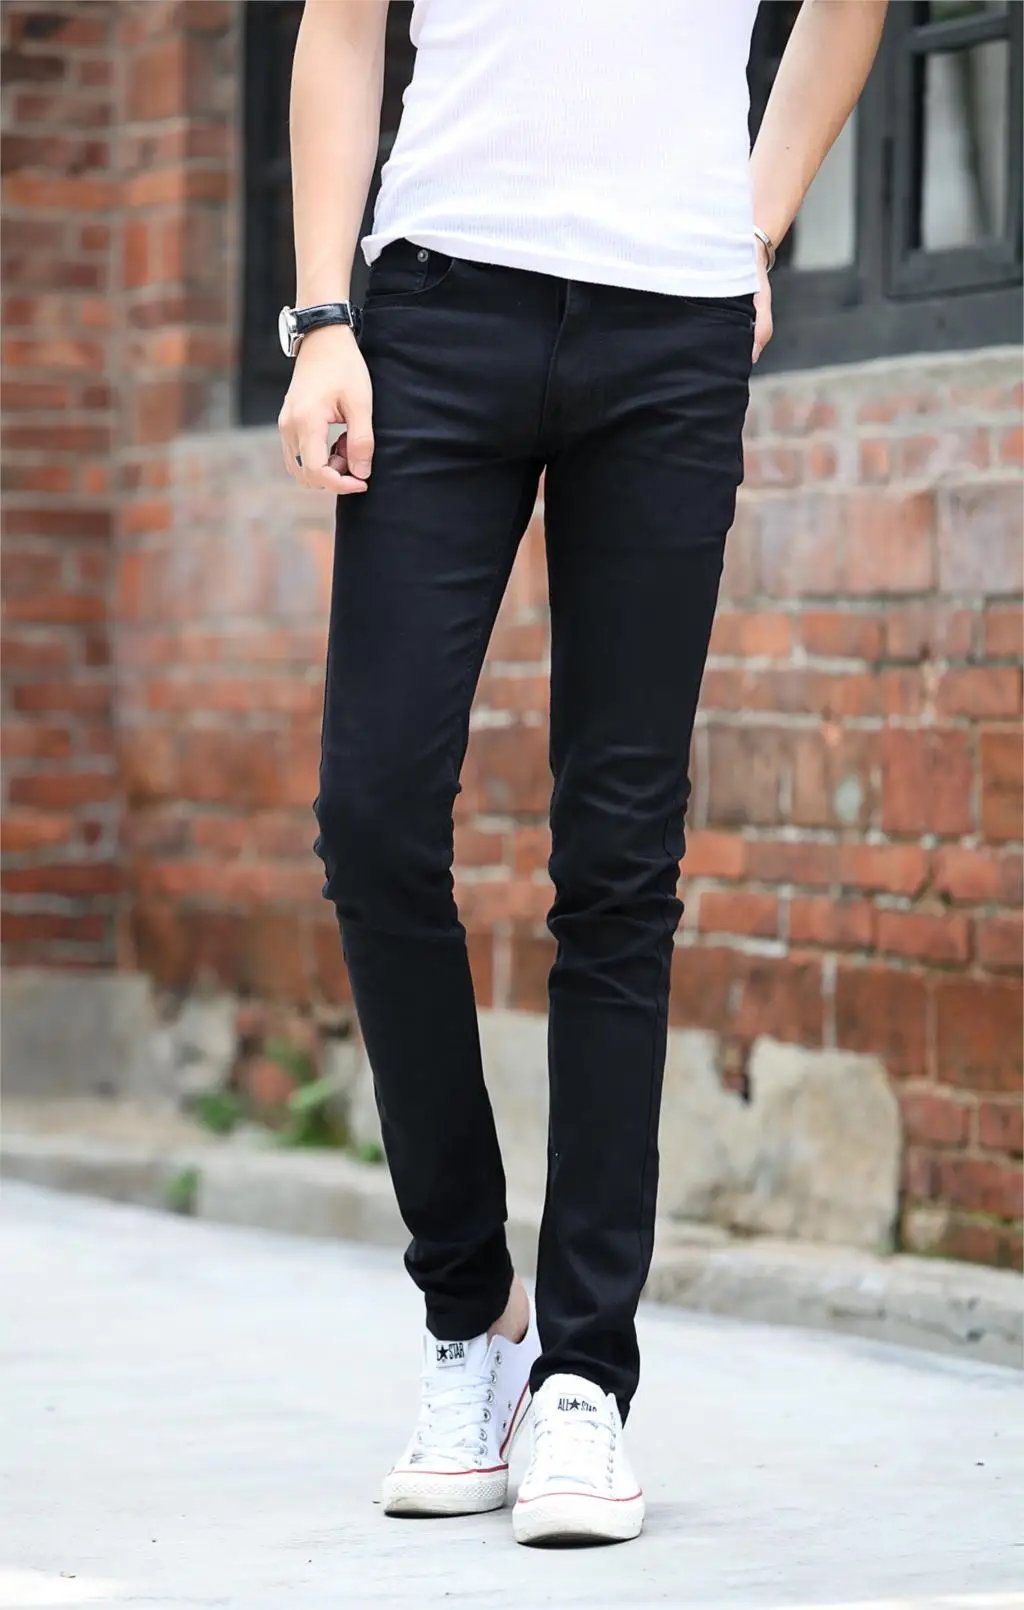 Мужские узкие Стрейчевые брюки узкие джинсы осенние модные ковбойские узкие Брюки homme повседневные джинсы черные джинсовые брюки Размер